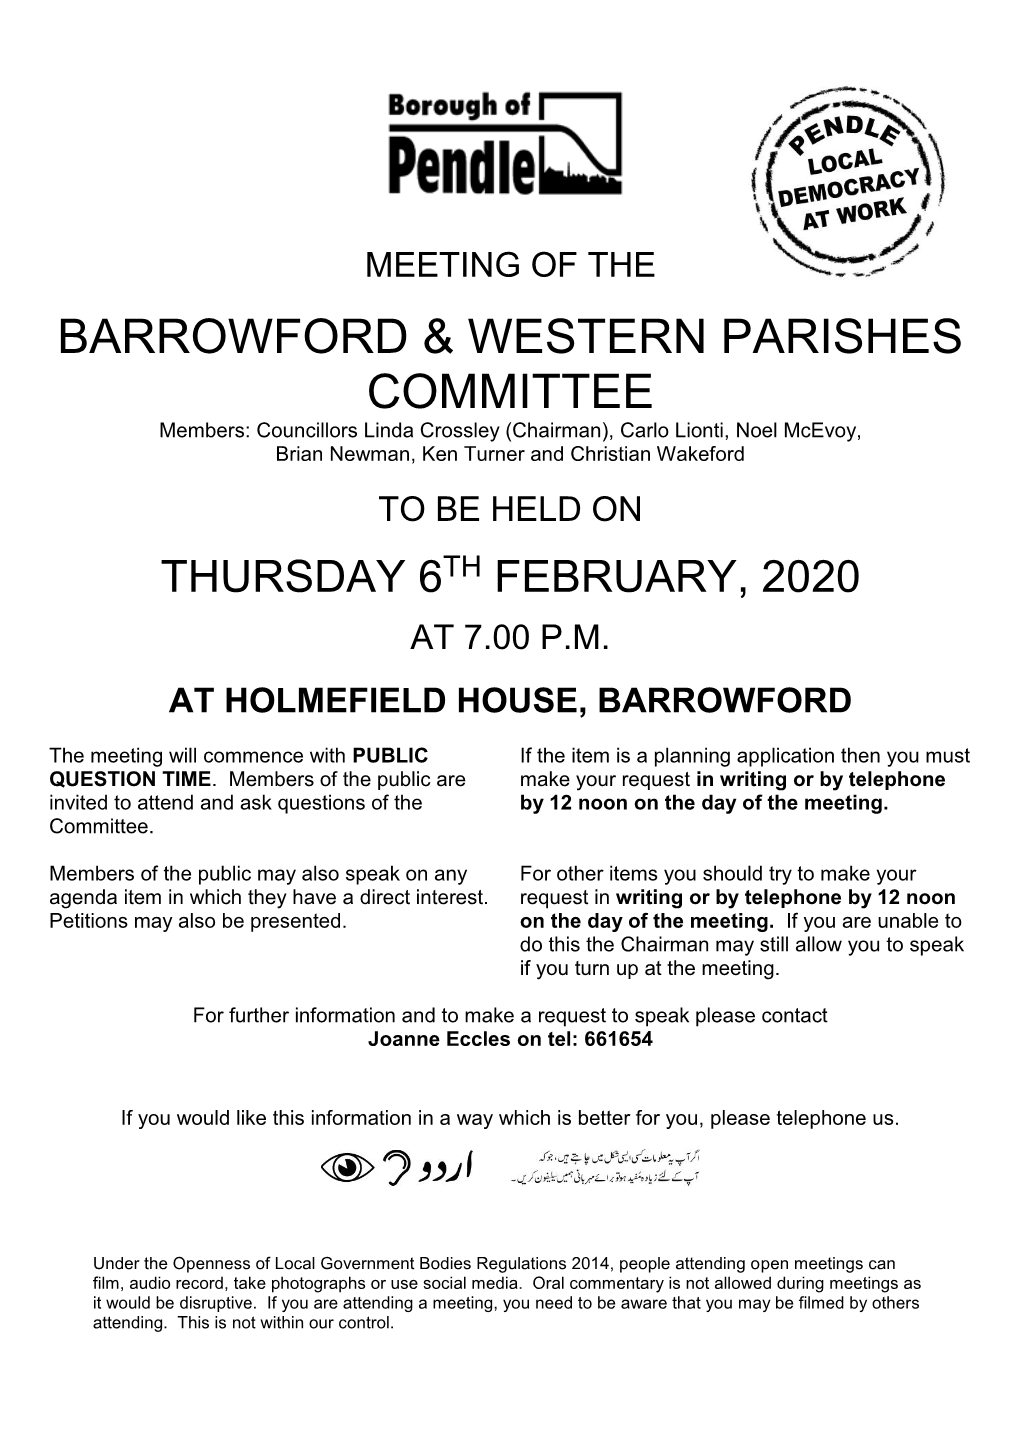 Barrowford & Western Parishes Committee